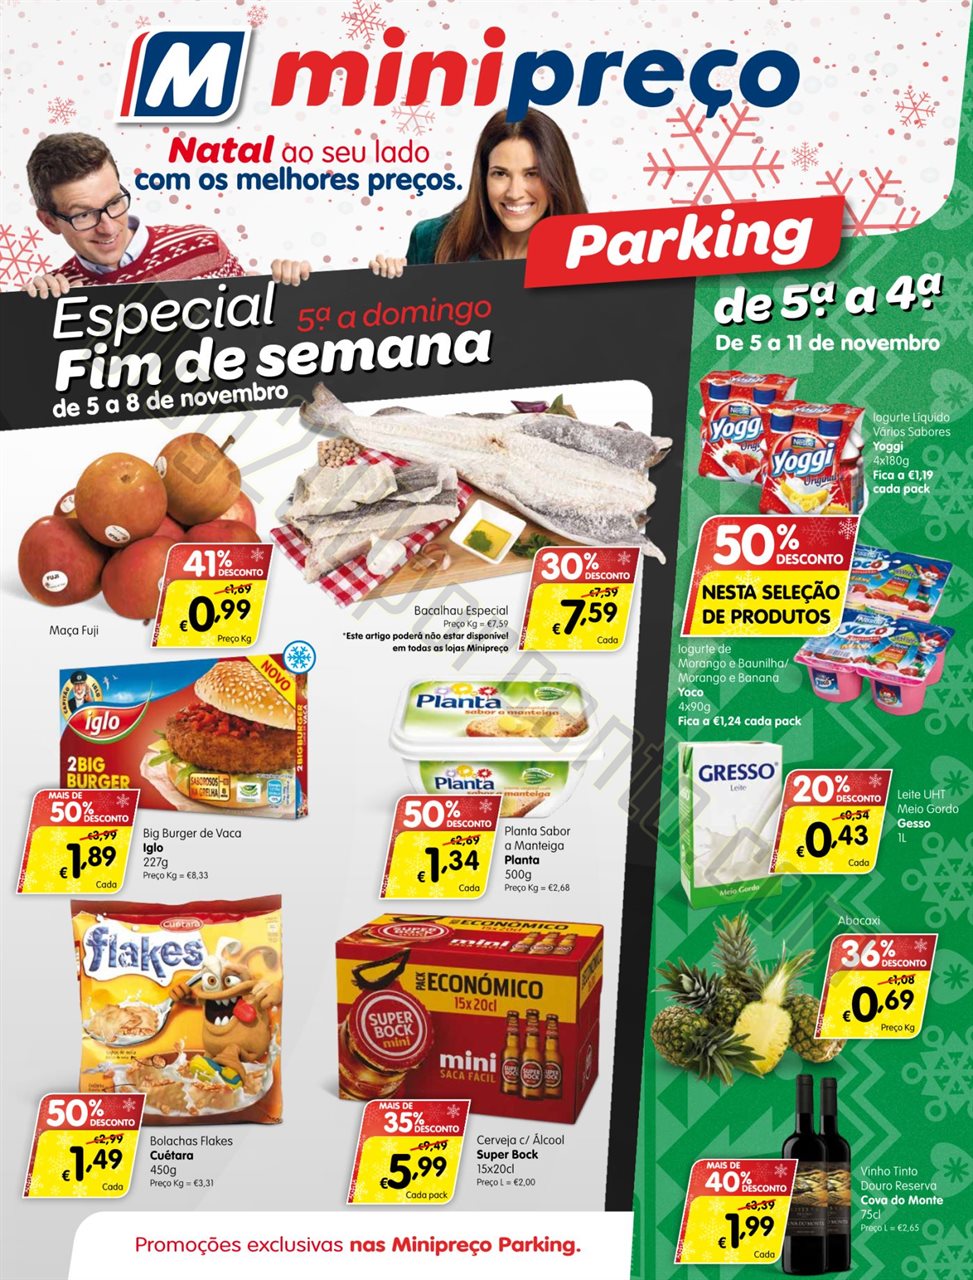 Antevisão folheto MINIPREÇO Parking promoções 